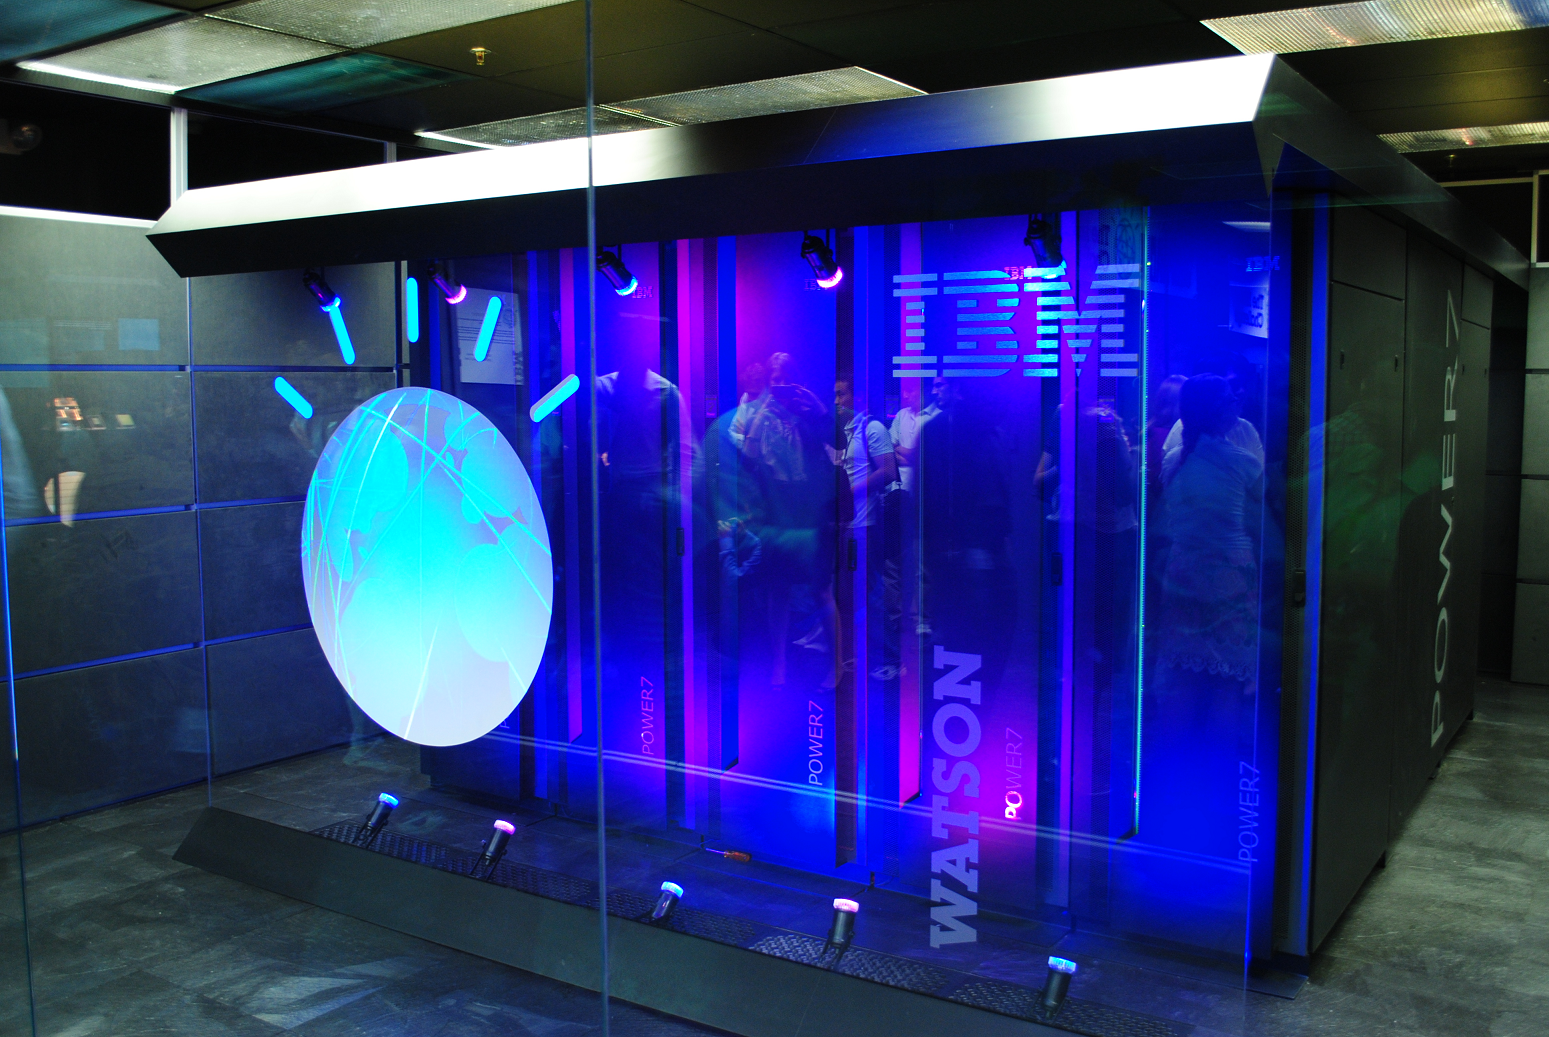 "IBM Watson at Work" YouTube